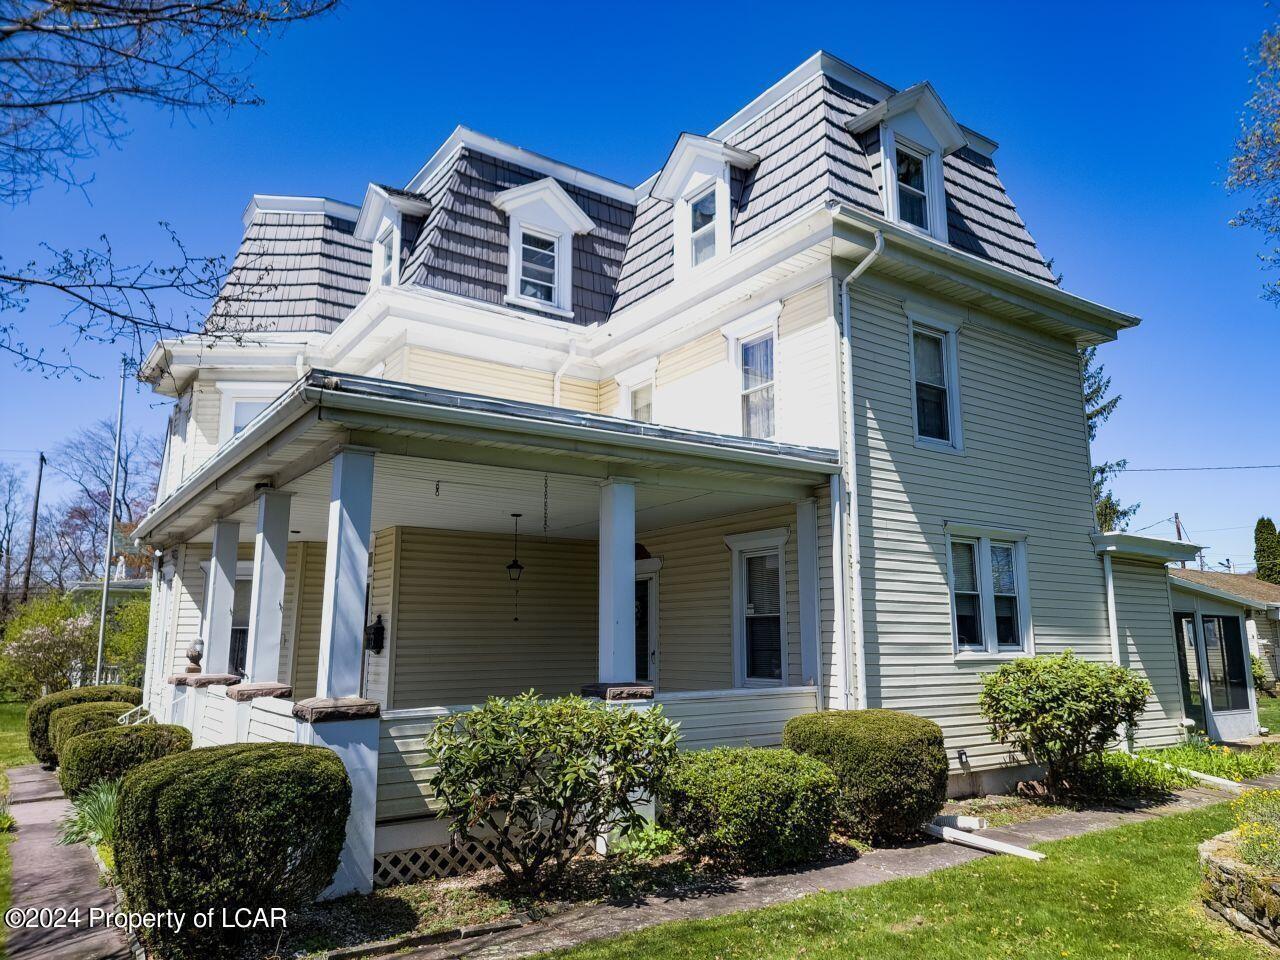 421 Erie Street, White Haven, PA 18661: Homes for Sale - Hommati  f819c264e7fc78a08fc7e21f6706707f